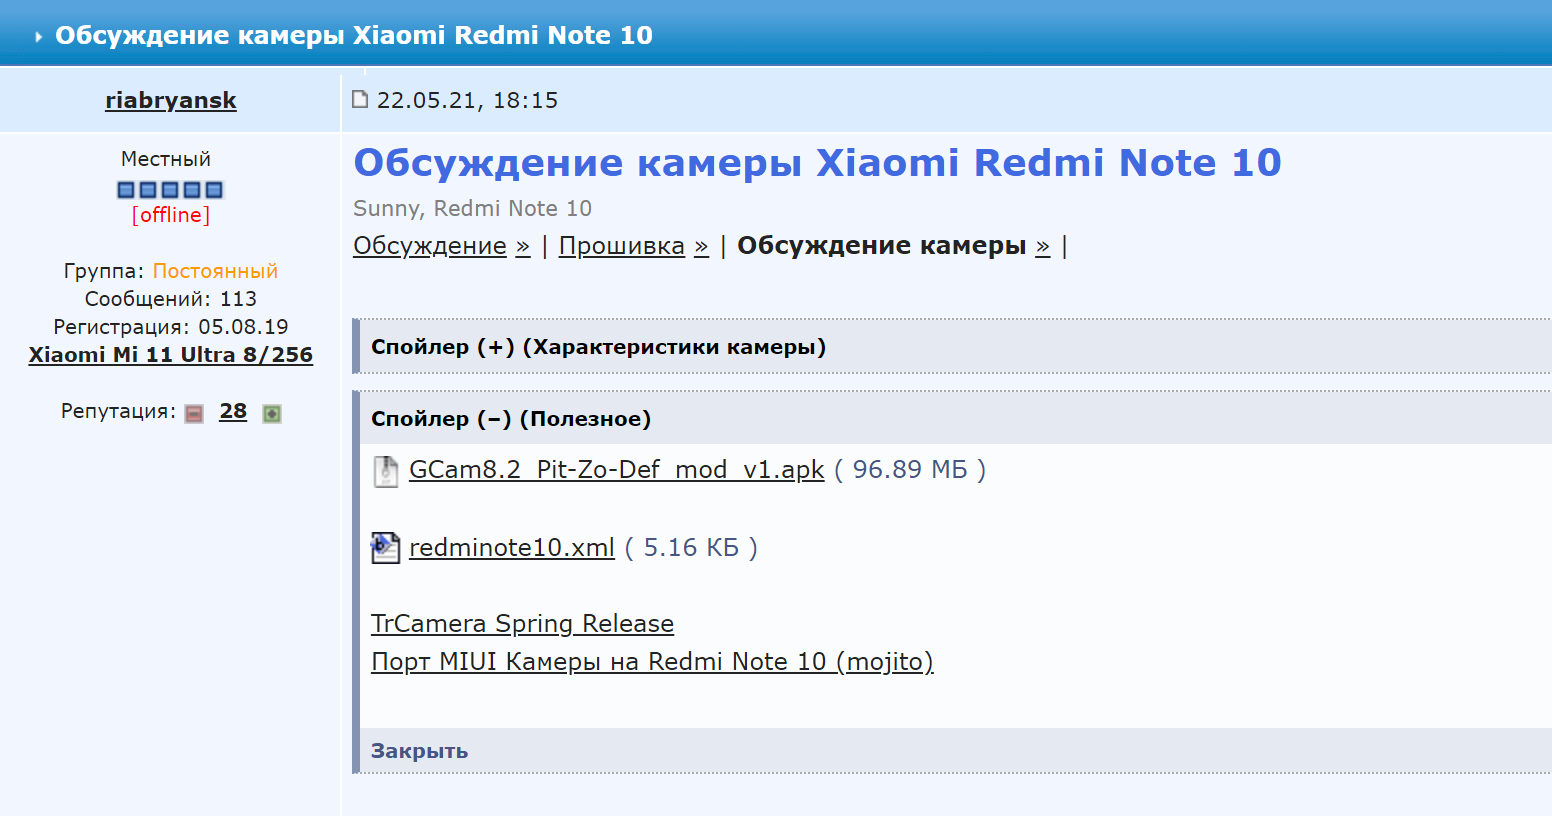 Для Redmi Note 10 ссылка на подходящую модификацию размещена прямо в заглавном посте форума